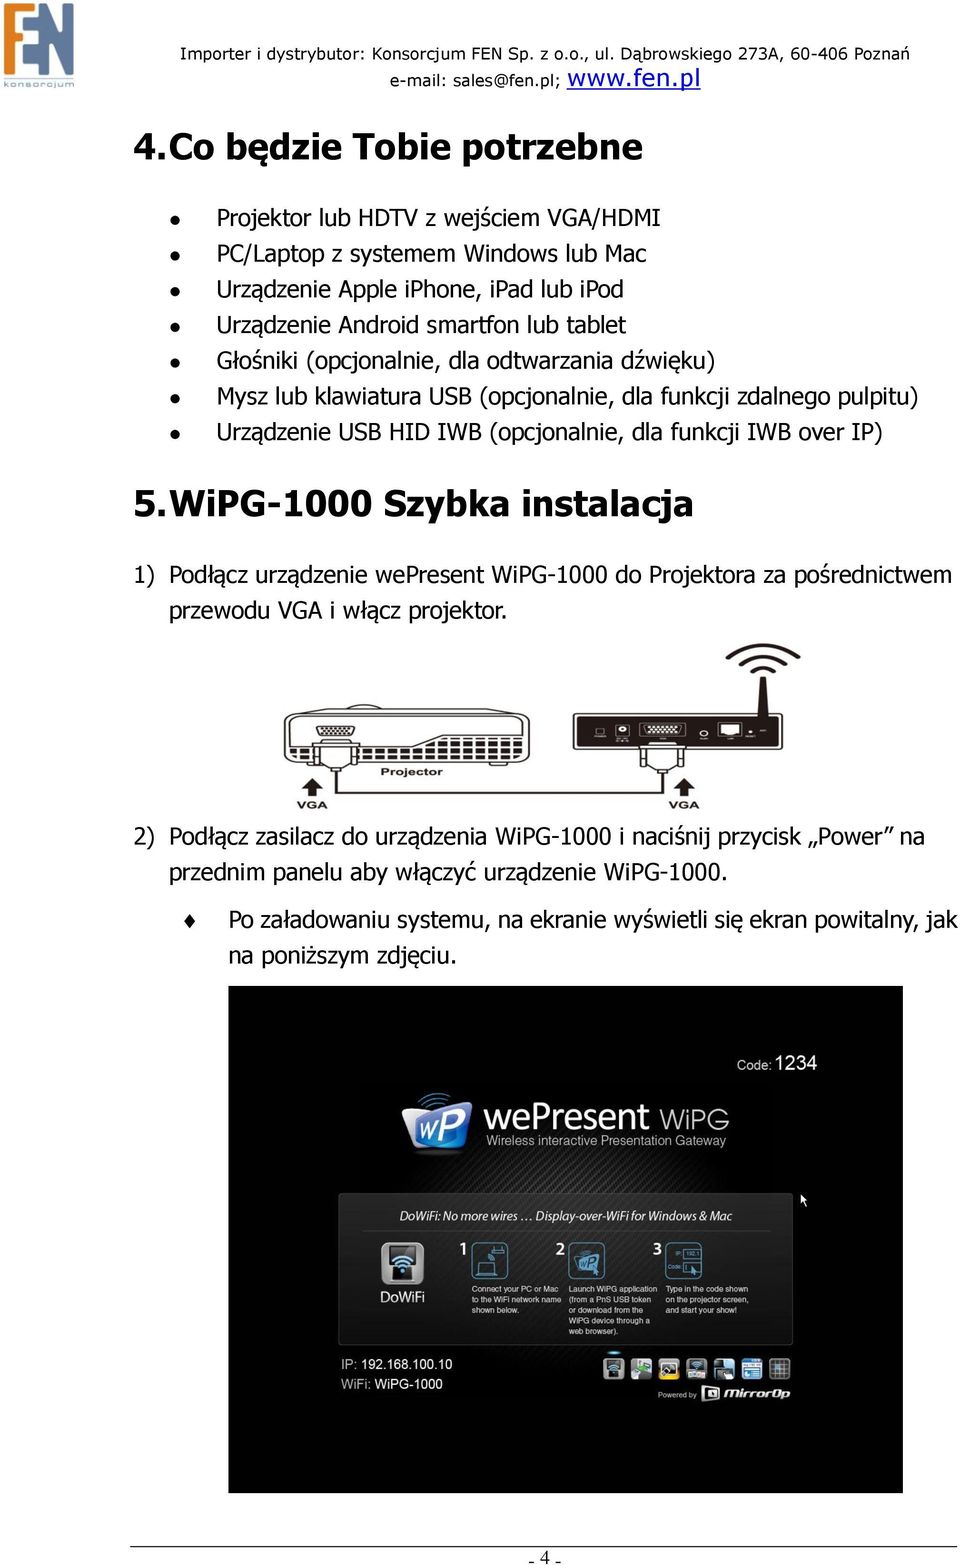 over IP) 5. WiPG-1000 Szybka instalacja 1) Podłącz urządzenie wepresent WiPG-1000 do Projektora za pośrednictwem przewodu VGA i włącz projektor.